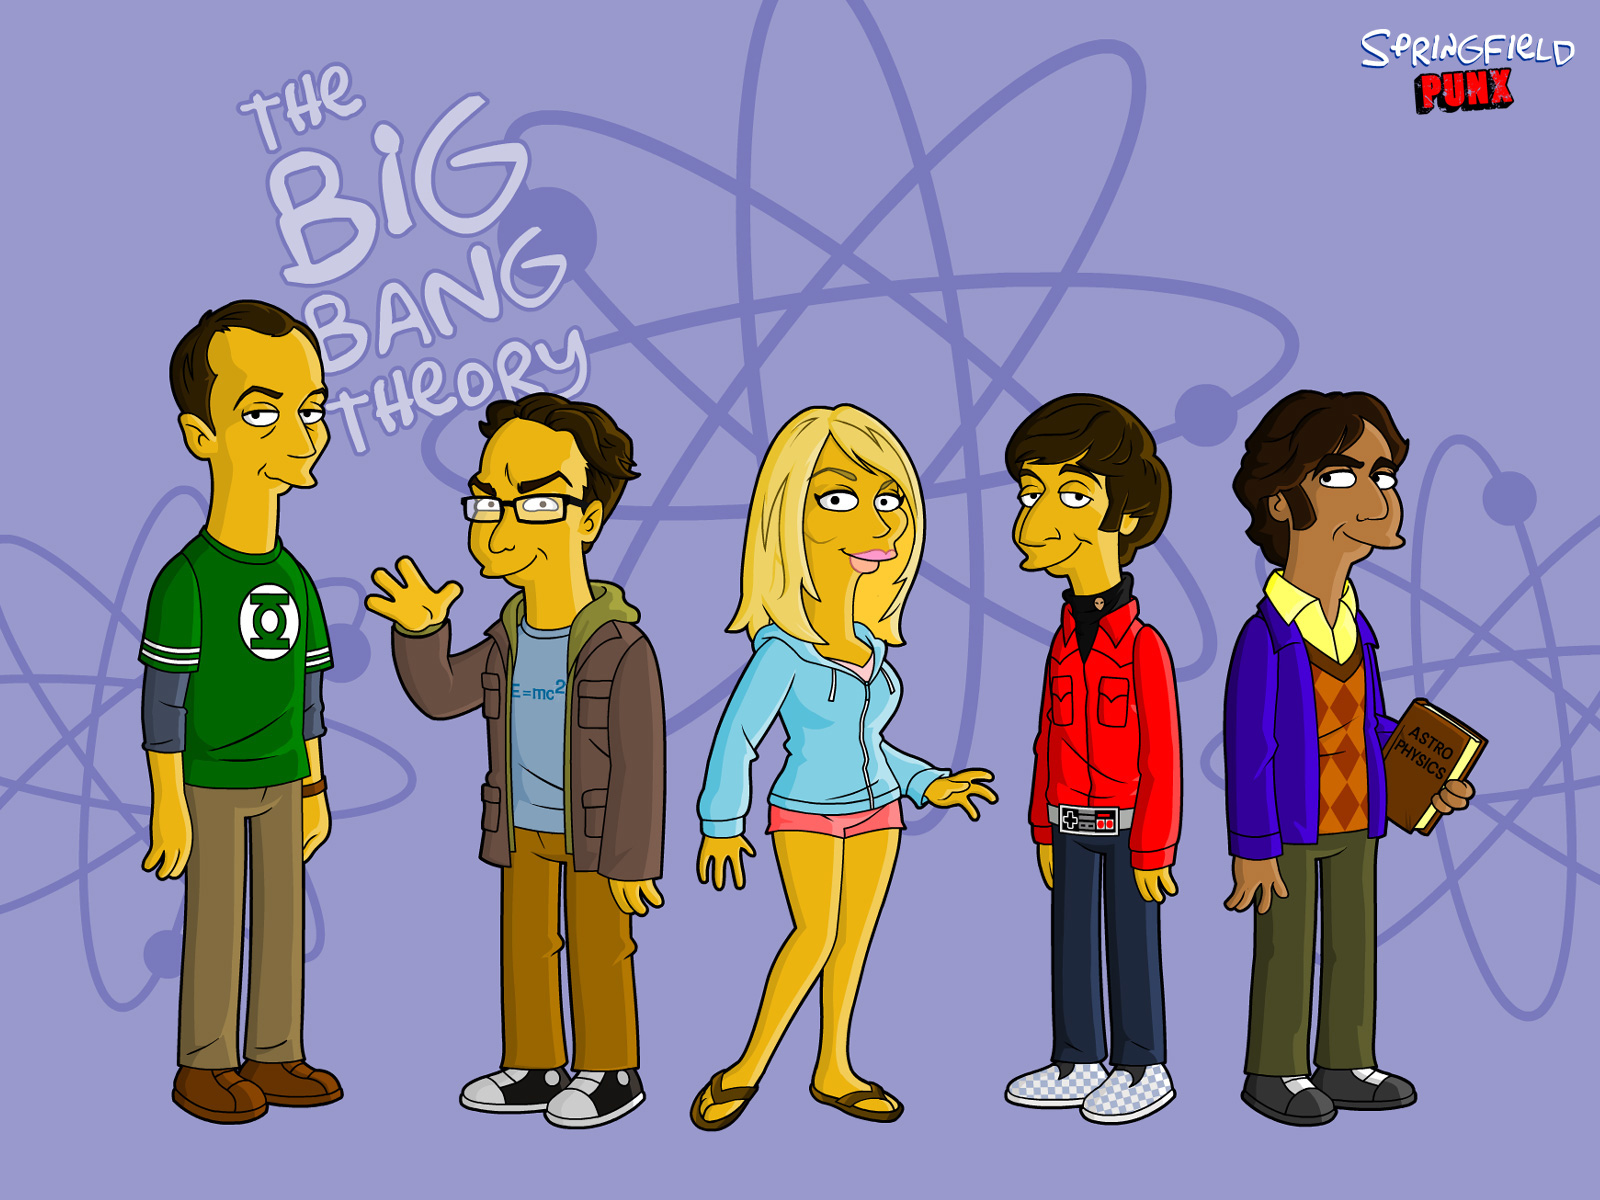 Springfield Punx The Big Bang Theory Wallpaper